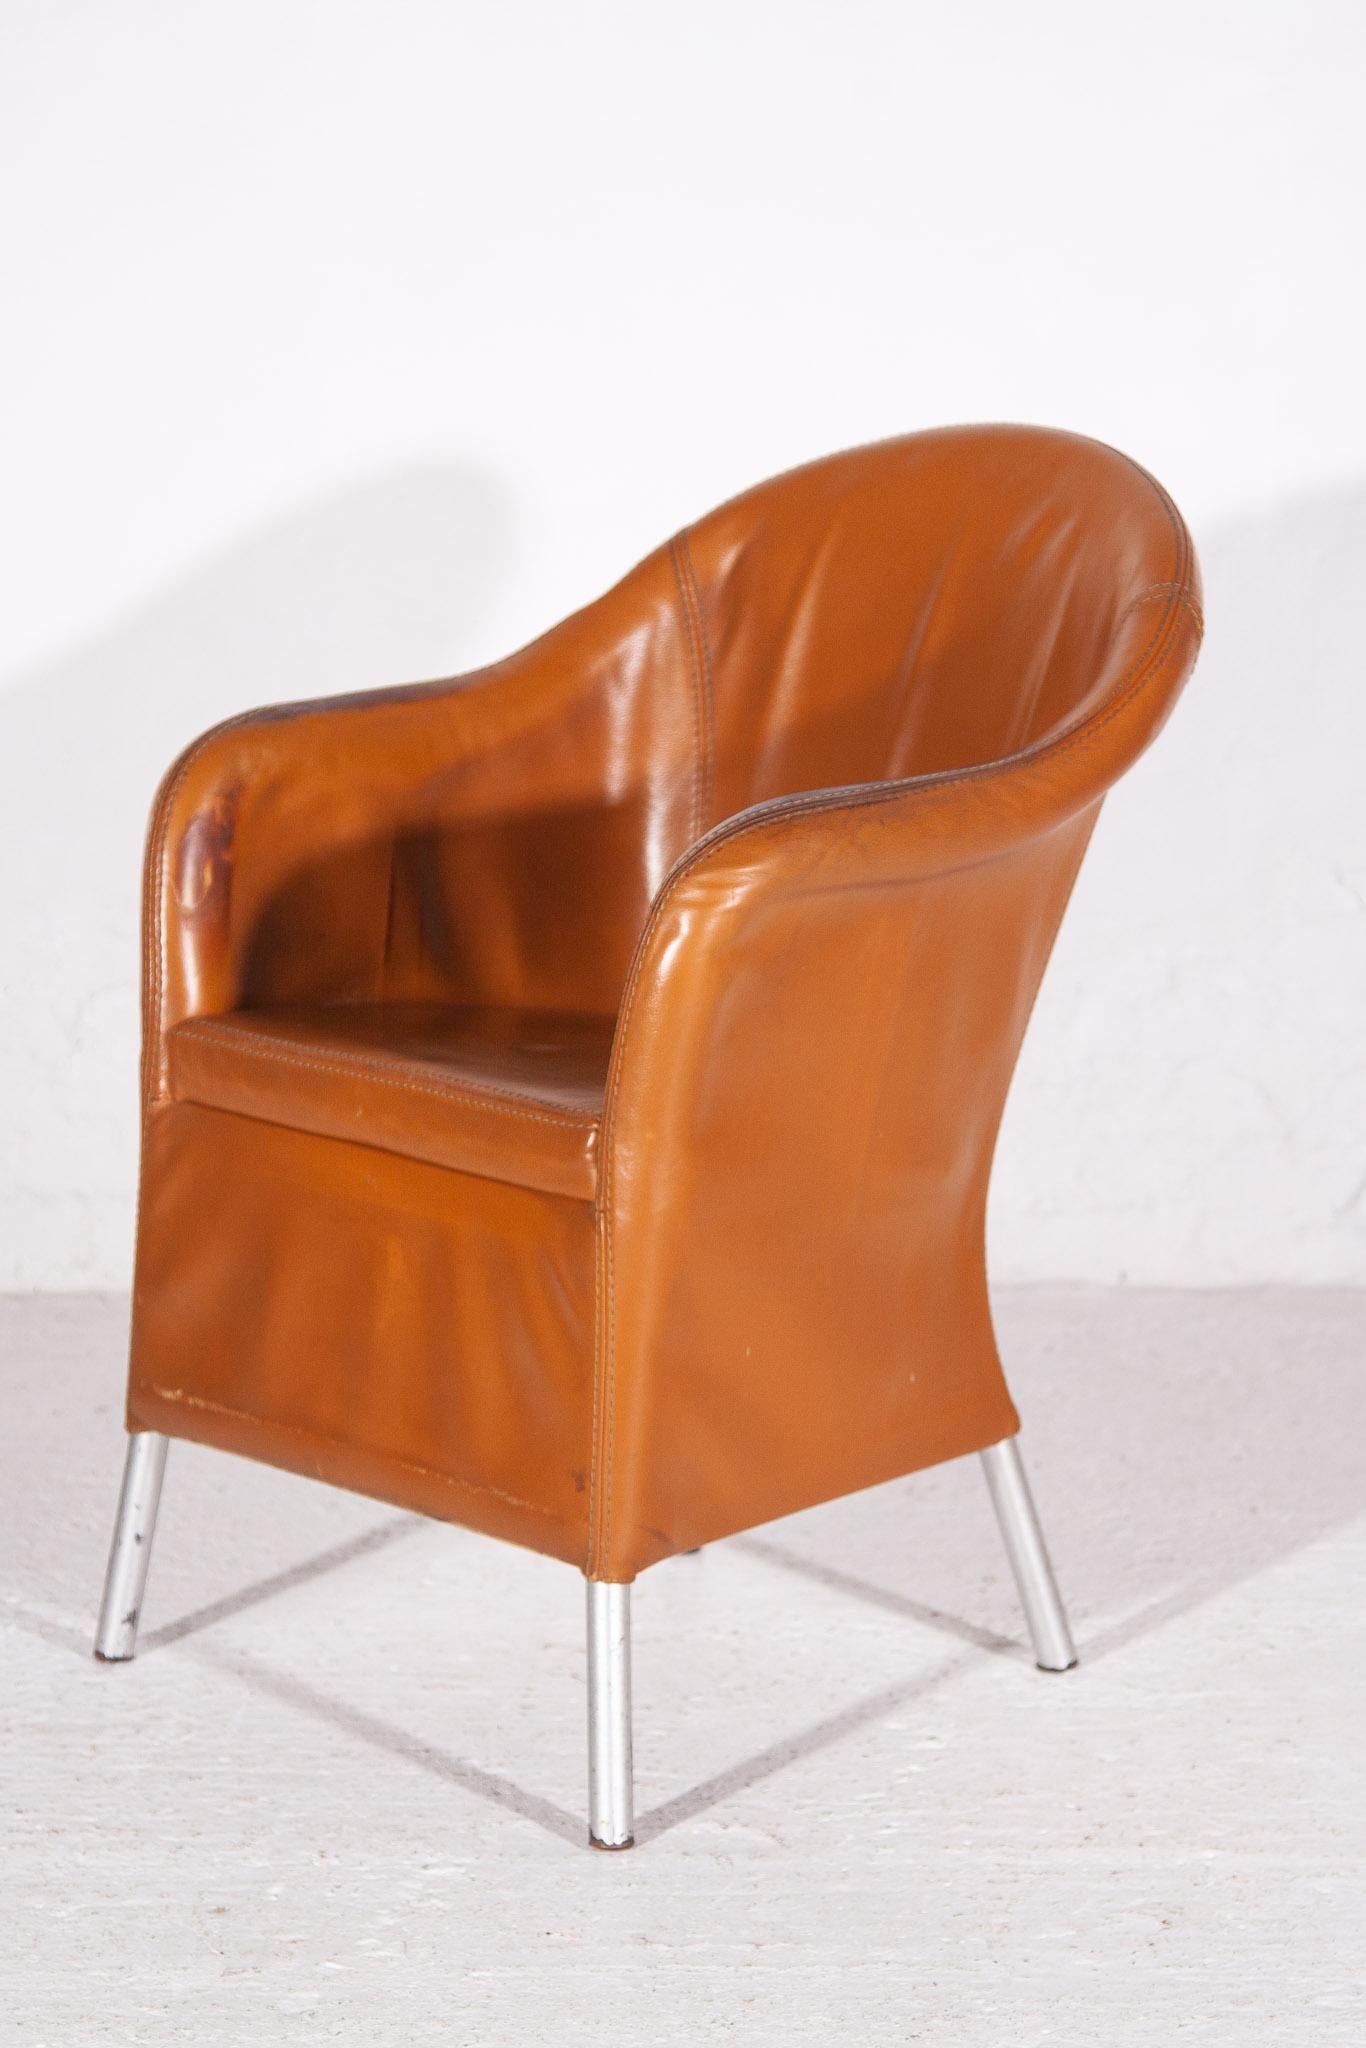 Vintage set de 12 fauteuils confortables en cuir camel avec des pieds en aluminium chromé caractérisent cet ensemble de chaises de salle à manger, de bureau ou d'appoint conçu par la manufacture belge Durlet. 




Depuis 1966, Durlet propose une